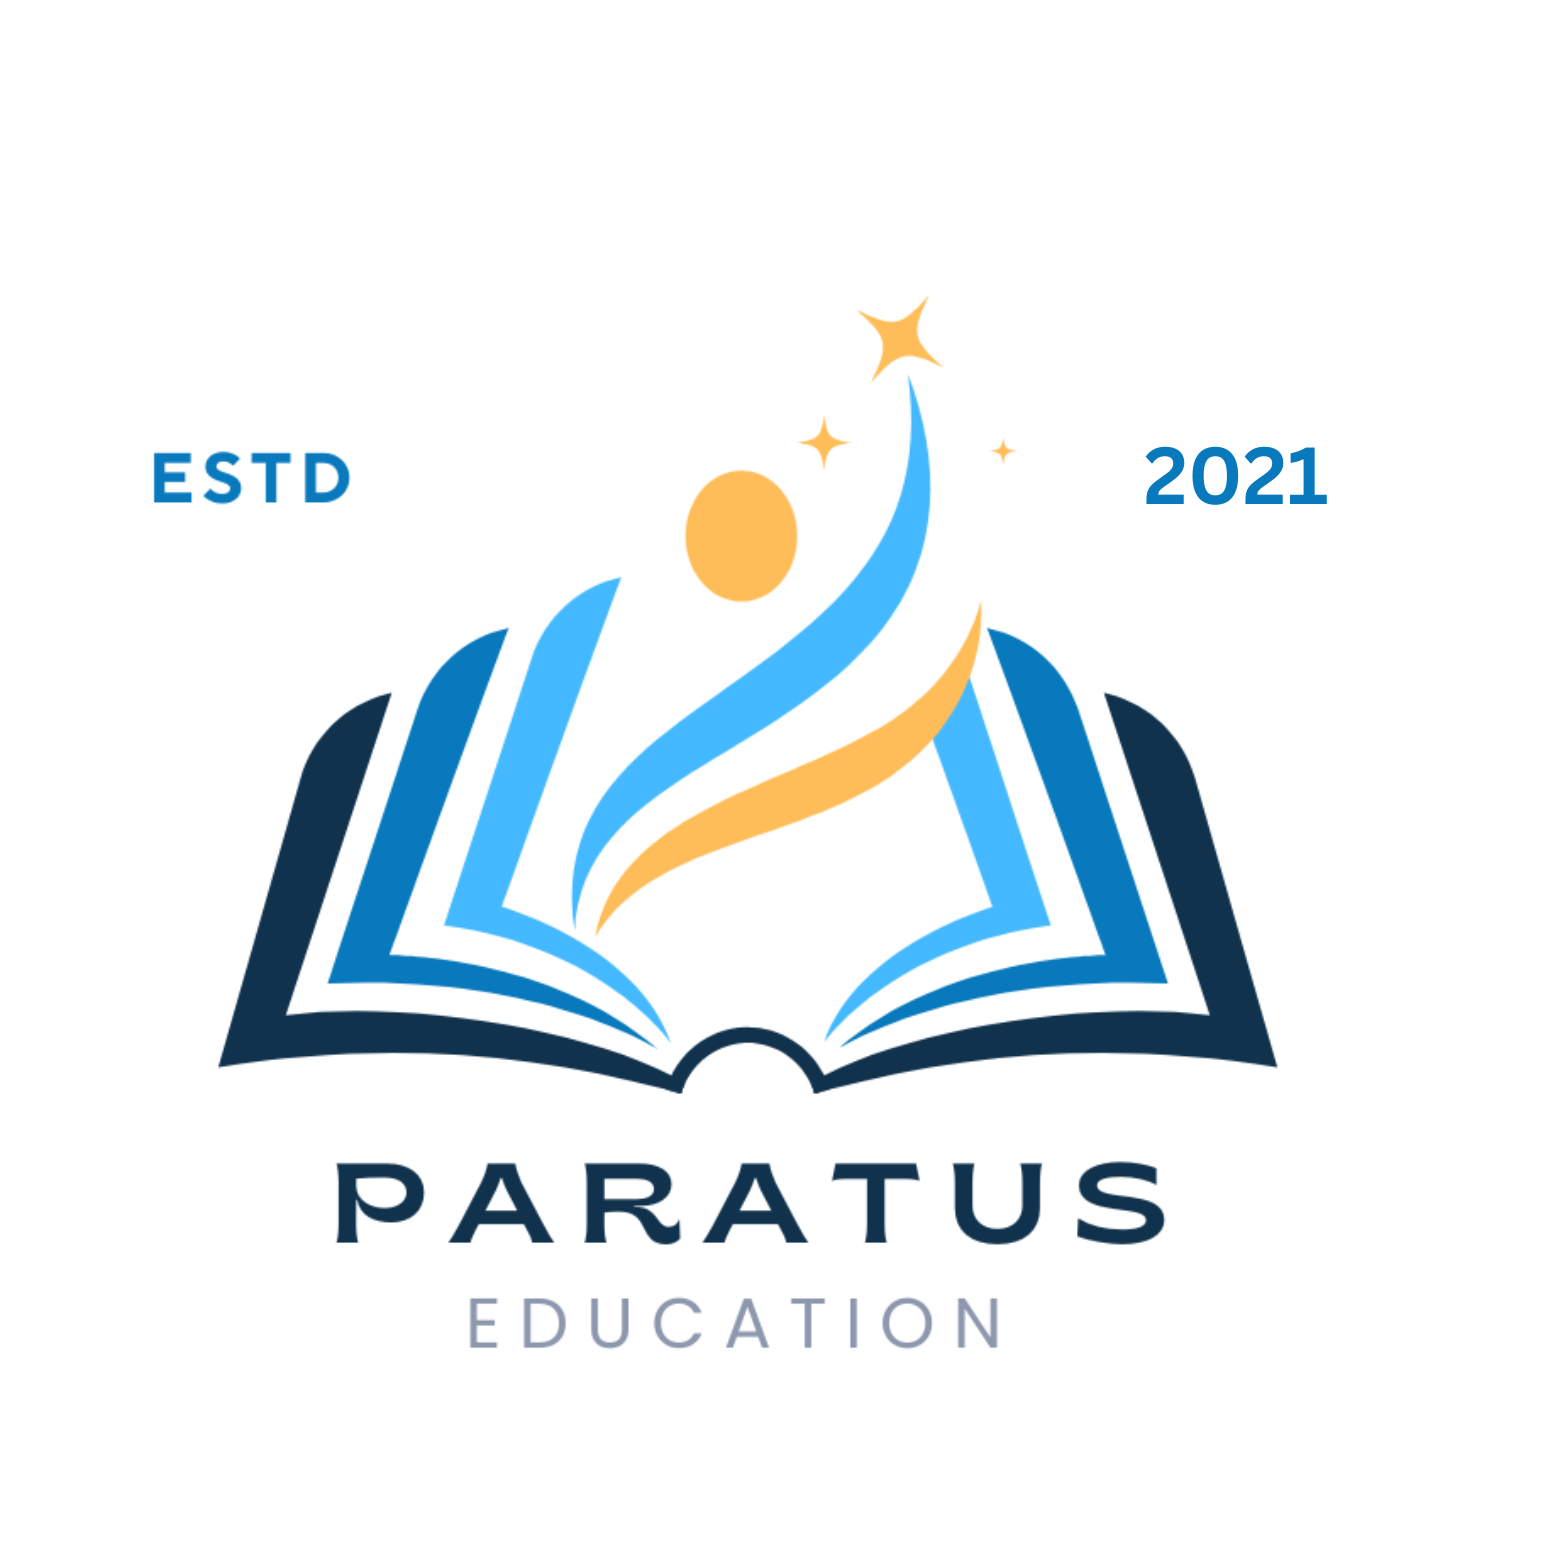 Paratus Premier Education